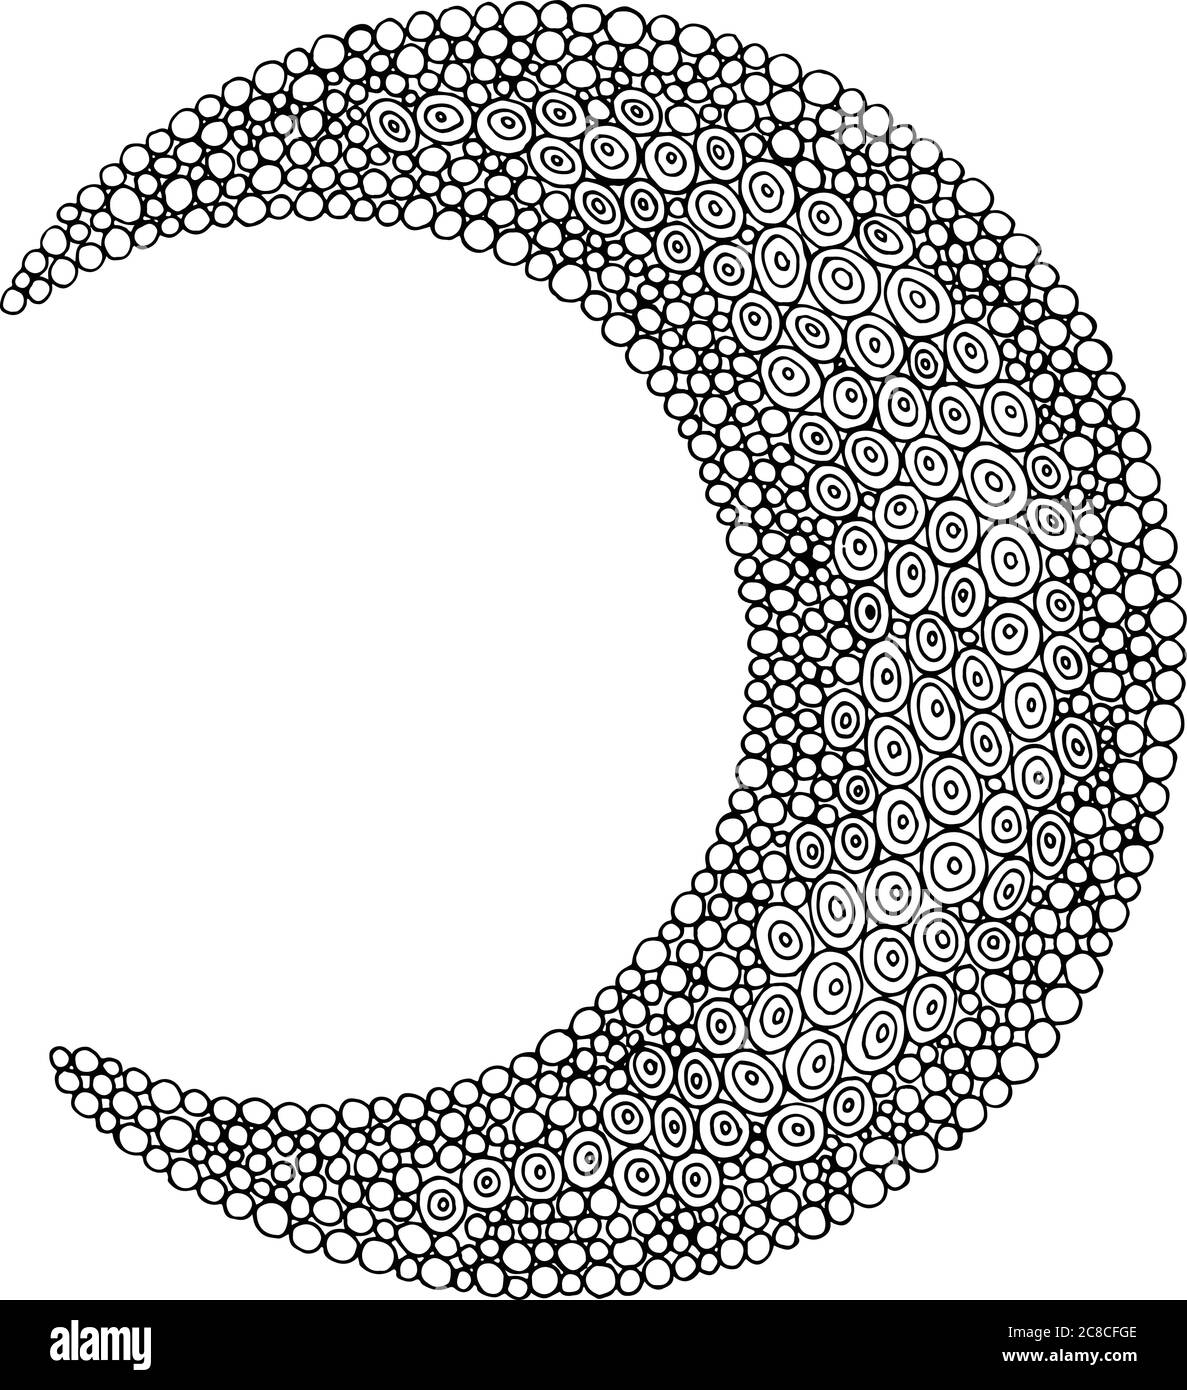 Doodle moon - Malvorlagen für Erwachsene und Kinder. Kreis Orna Stock Vektor